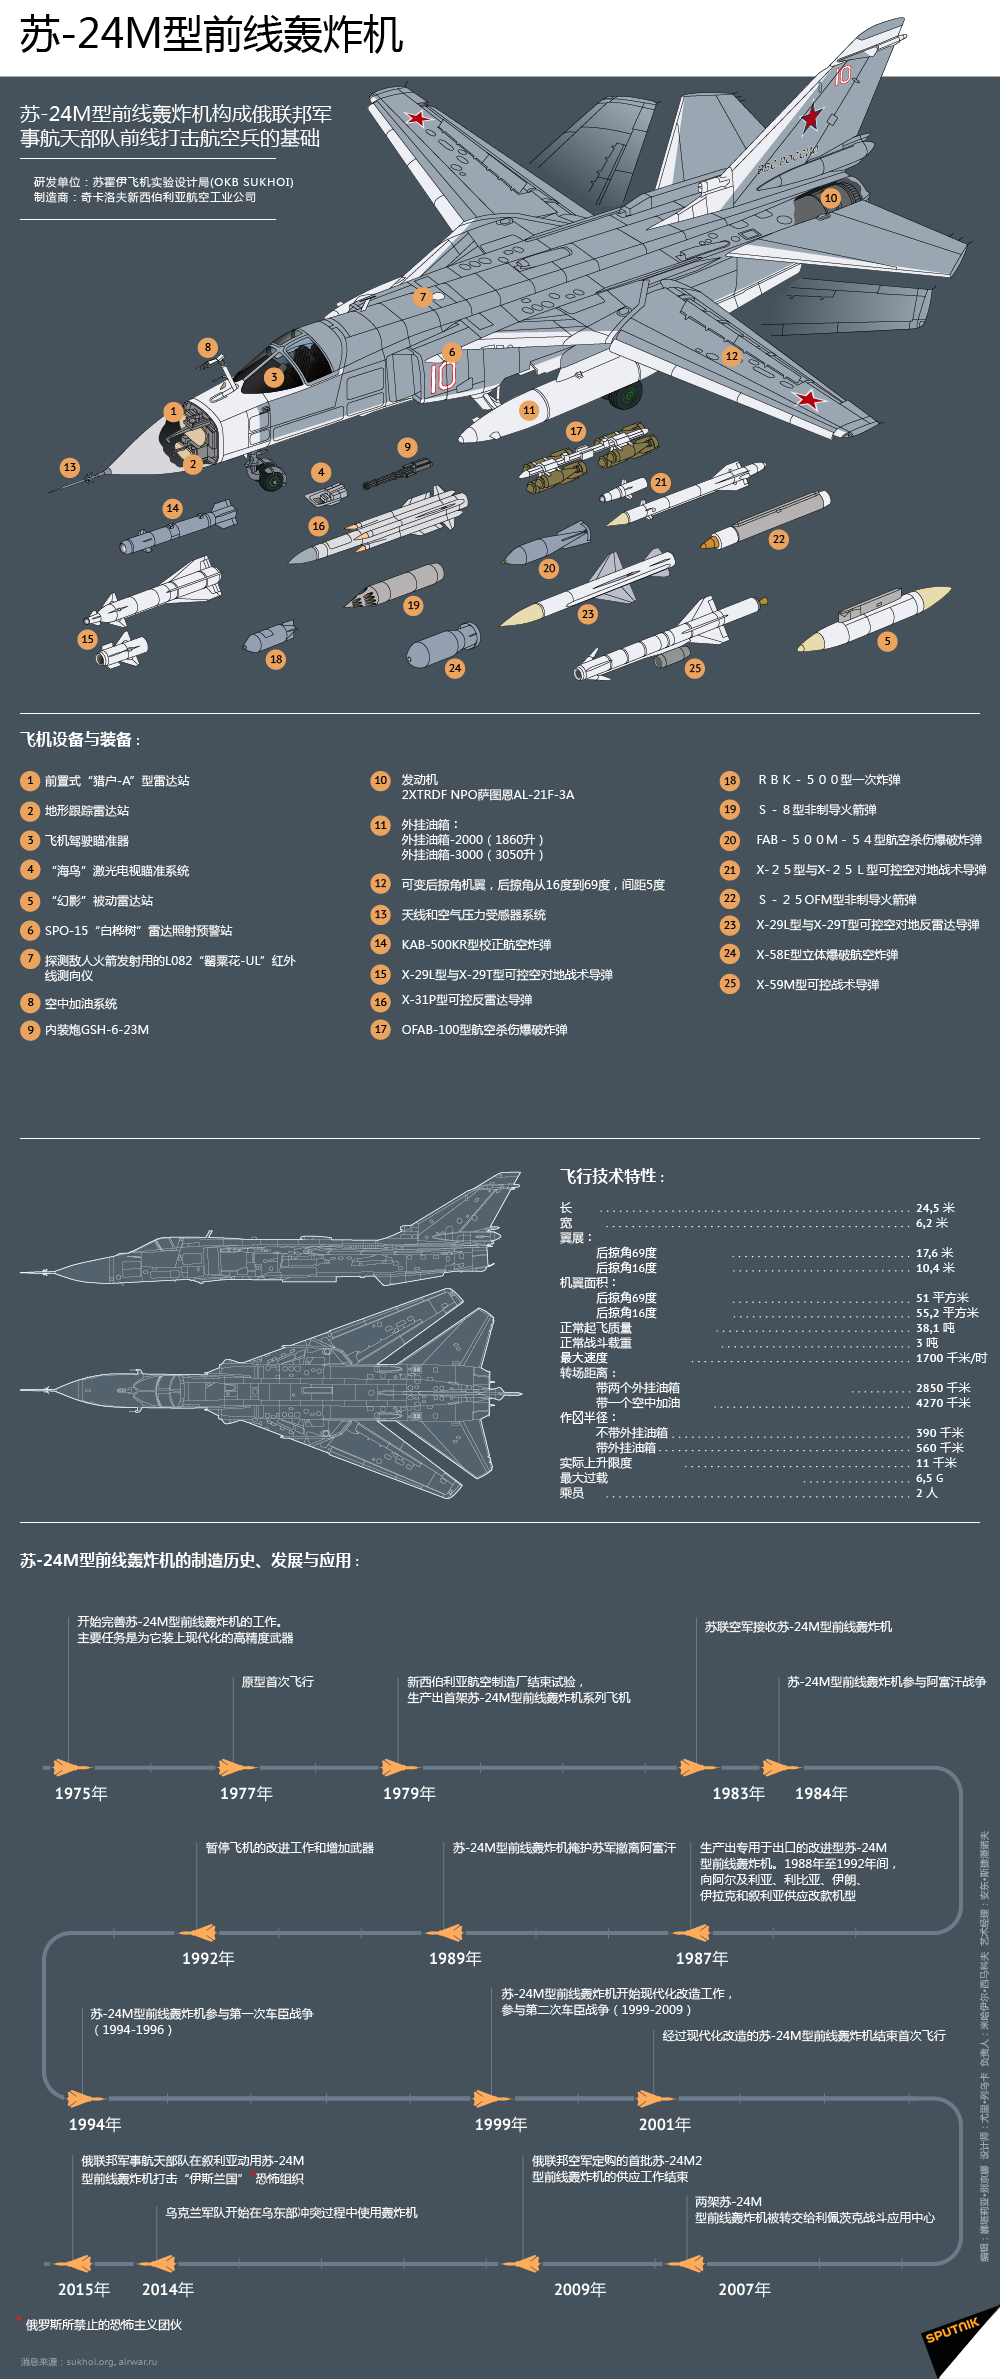 苏-24M型前线轰炸机 - 俄罗斯卫星通讯社